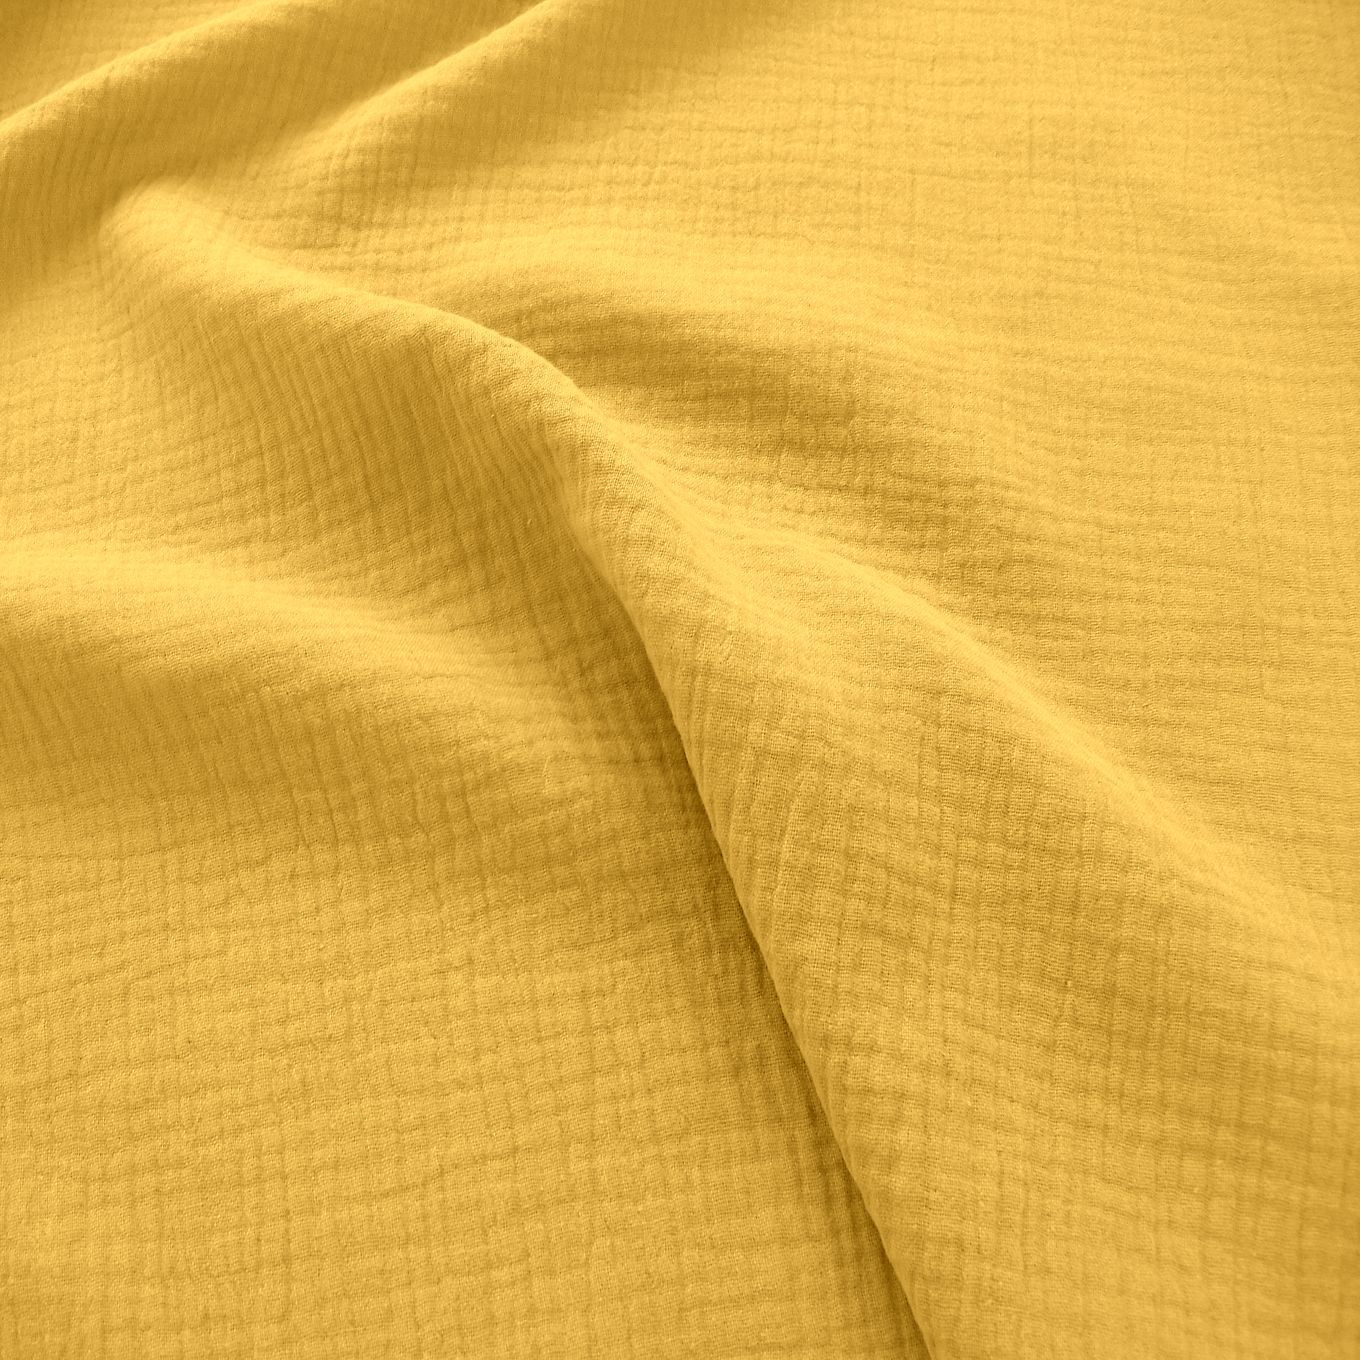 gelber Musselin/Gauze weicher Baumwollstoff zweilagig Kleider-Blusenstoff